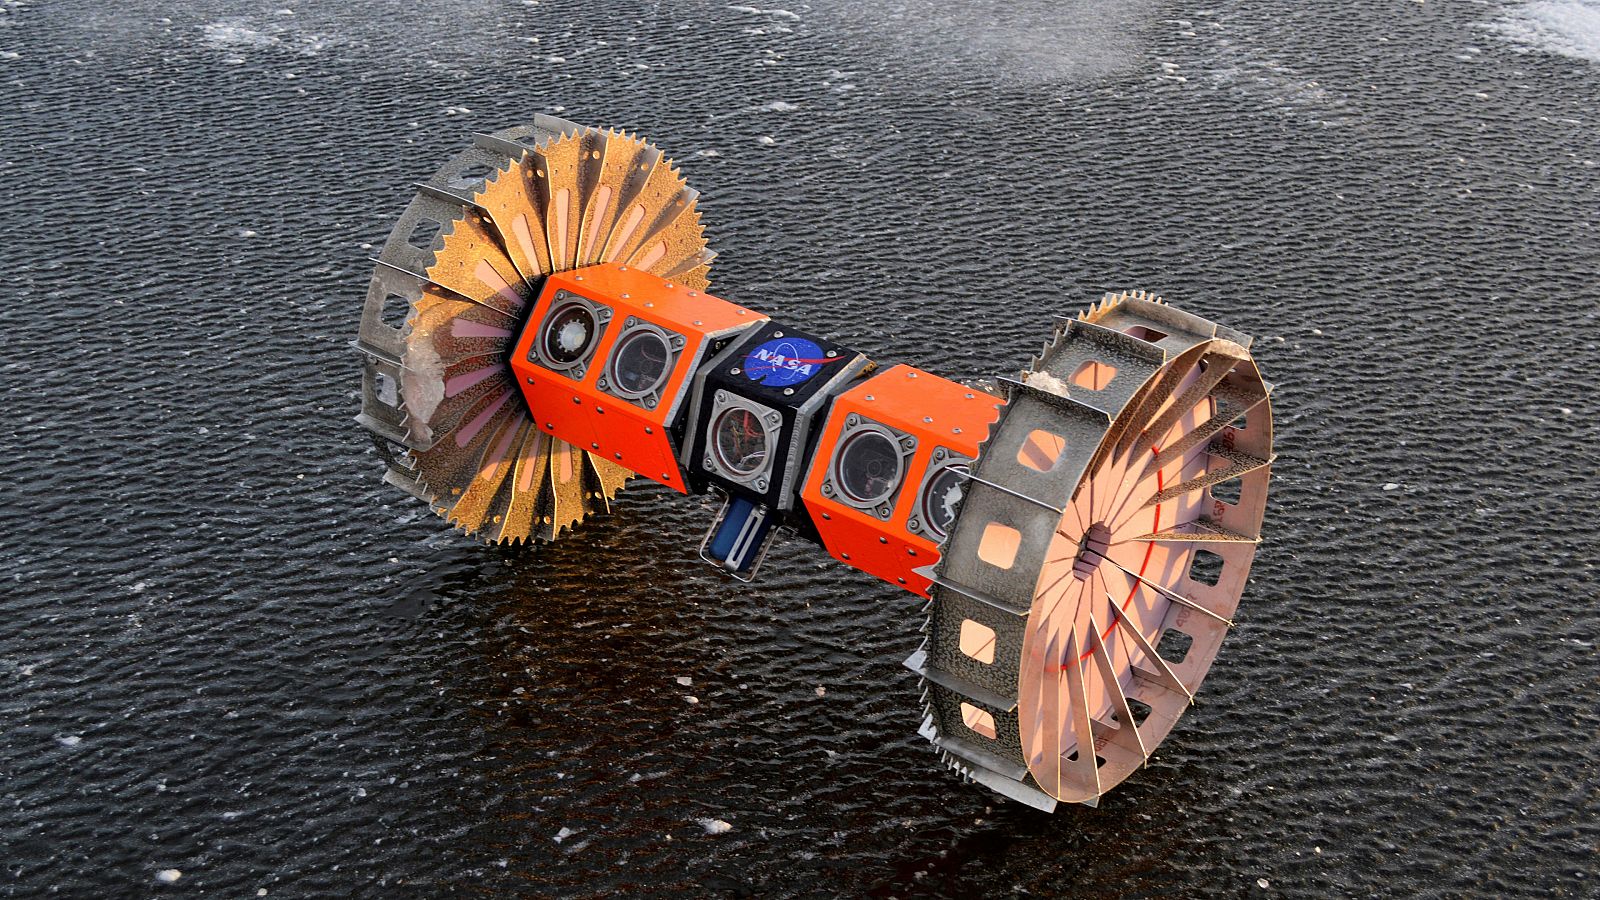 El robot es capaz de "adherirse a la parte inferior del hielo y moverse al revés mediante ruedas".